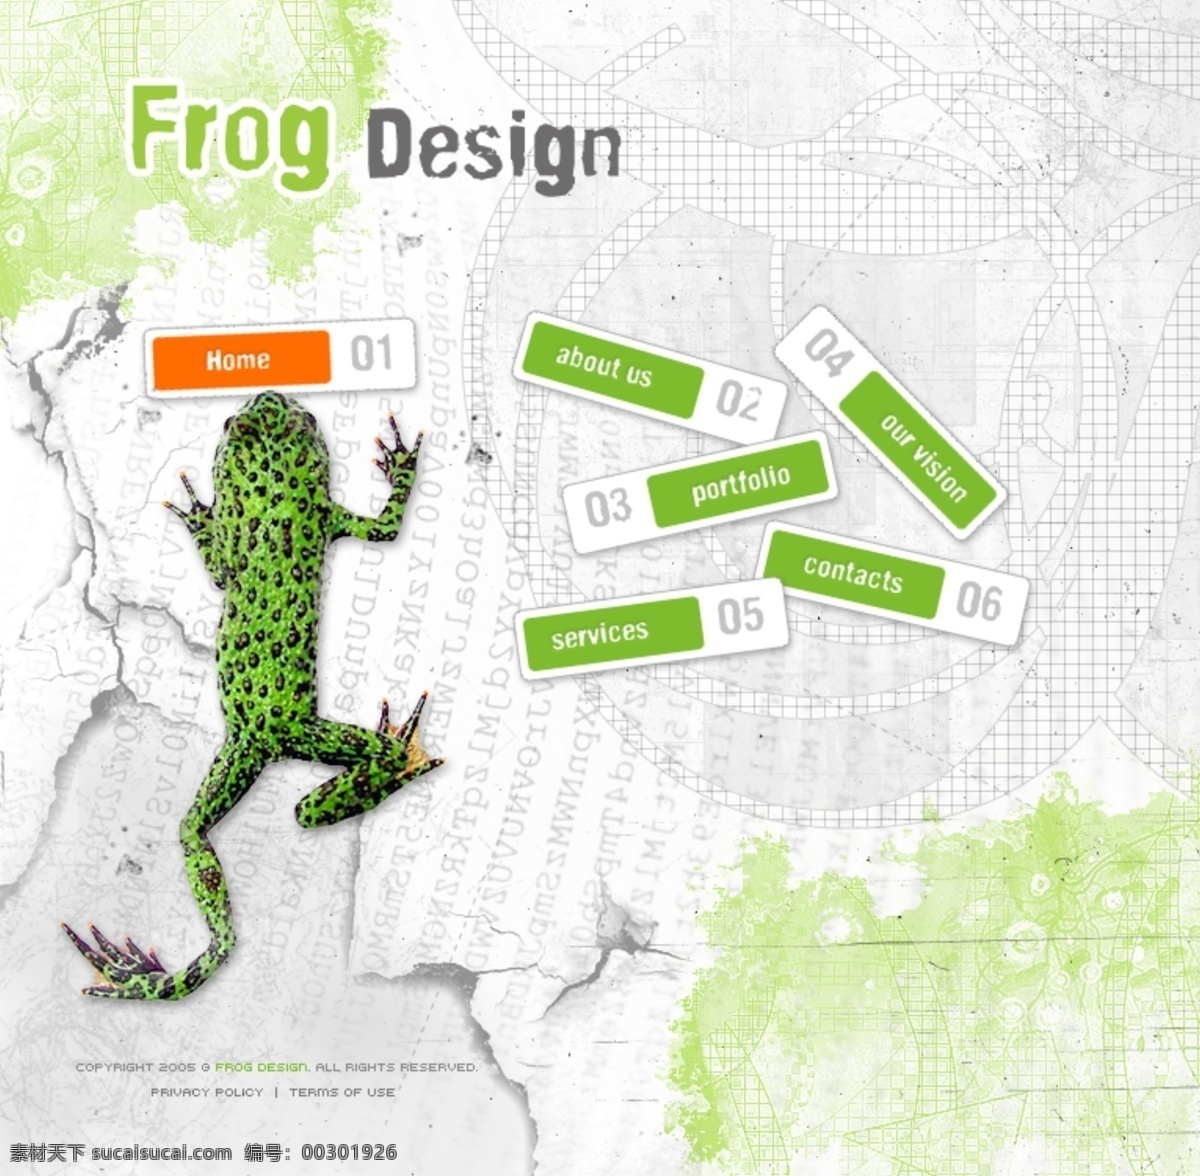 青蛙 卡通 创意 设计类 网页模板 创意设计类 网页 模板 web 界面设计 英文模板